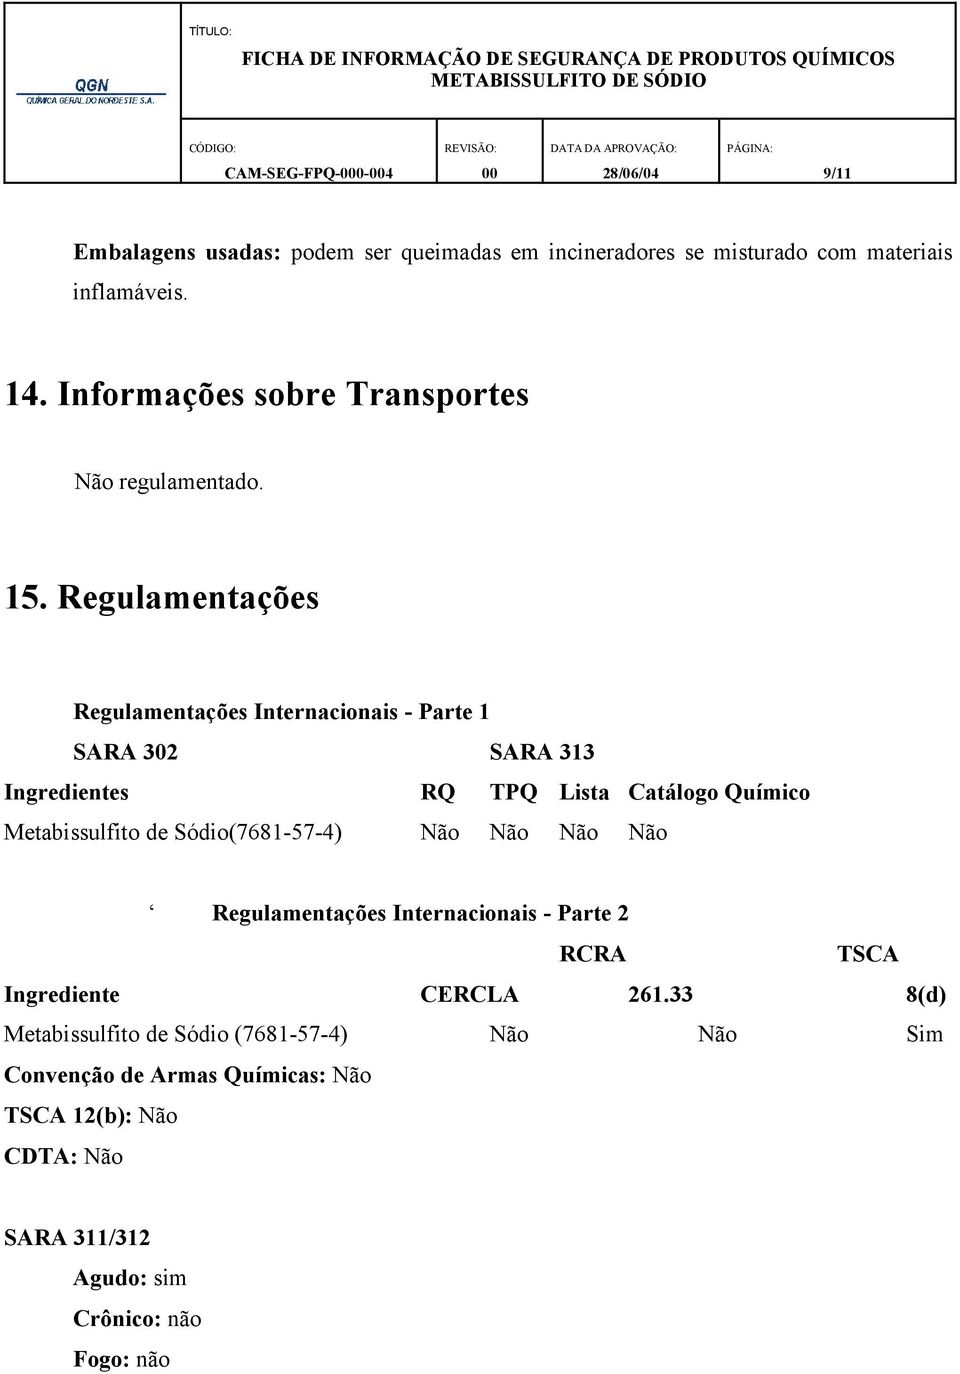 Regulamentações Regulamentações Internacionais - Parte 1 SARA 302 SARA 313 Ingredientes RQ TPQ Lista Catálogo Químico Metabissulfito de